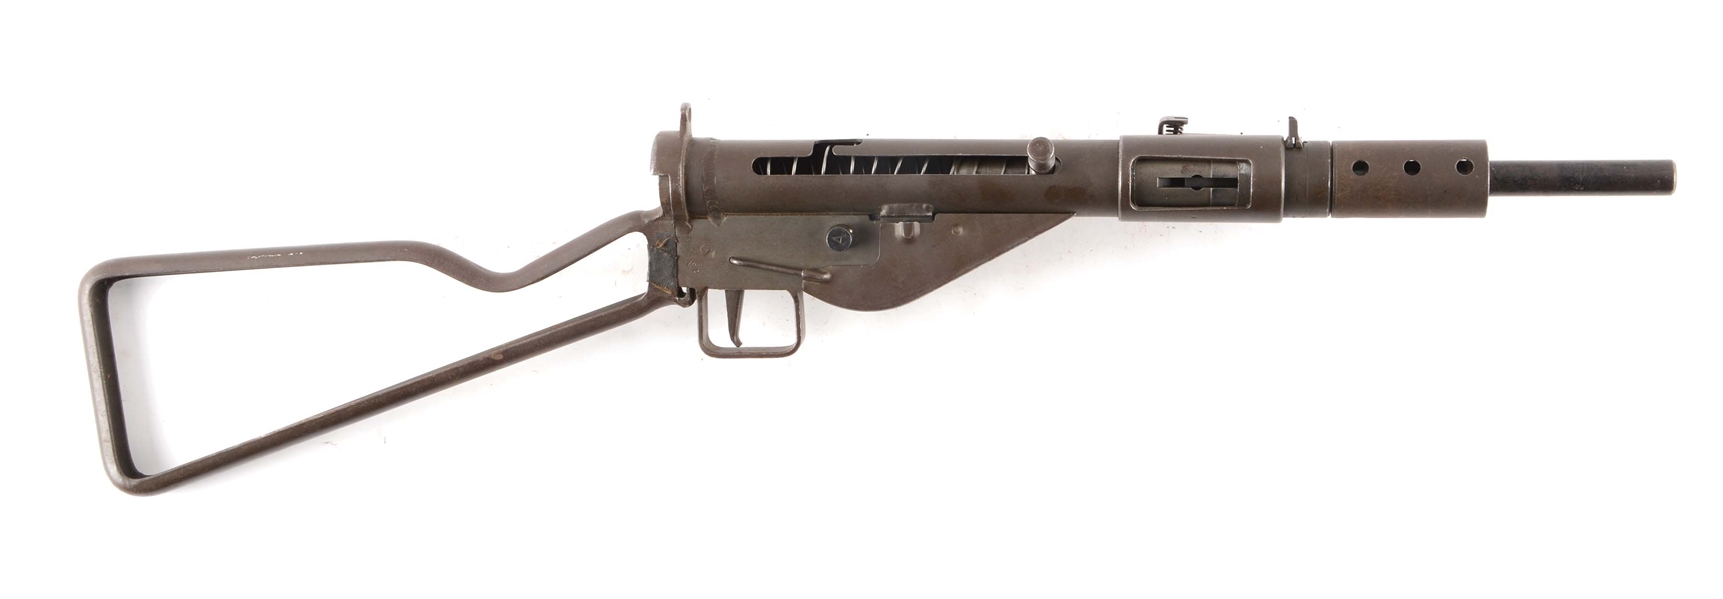 (N) YORK REGISTERED WORLD WAR II BRITISH STEN MK II MACHINE GUN WITH STEN MK V PARTS KIT (FULLY TRANSFERABLE).